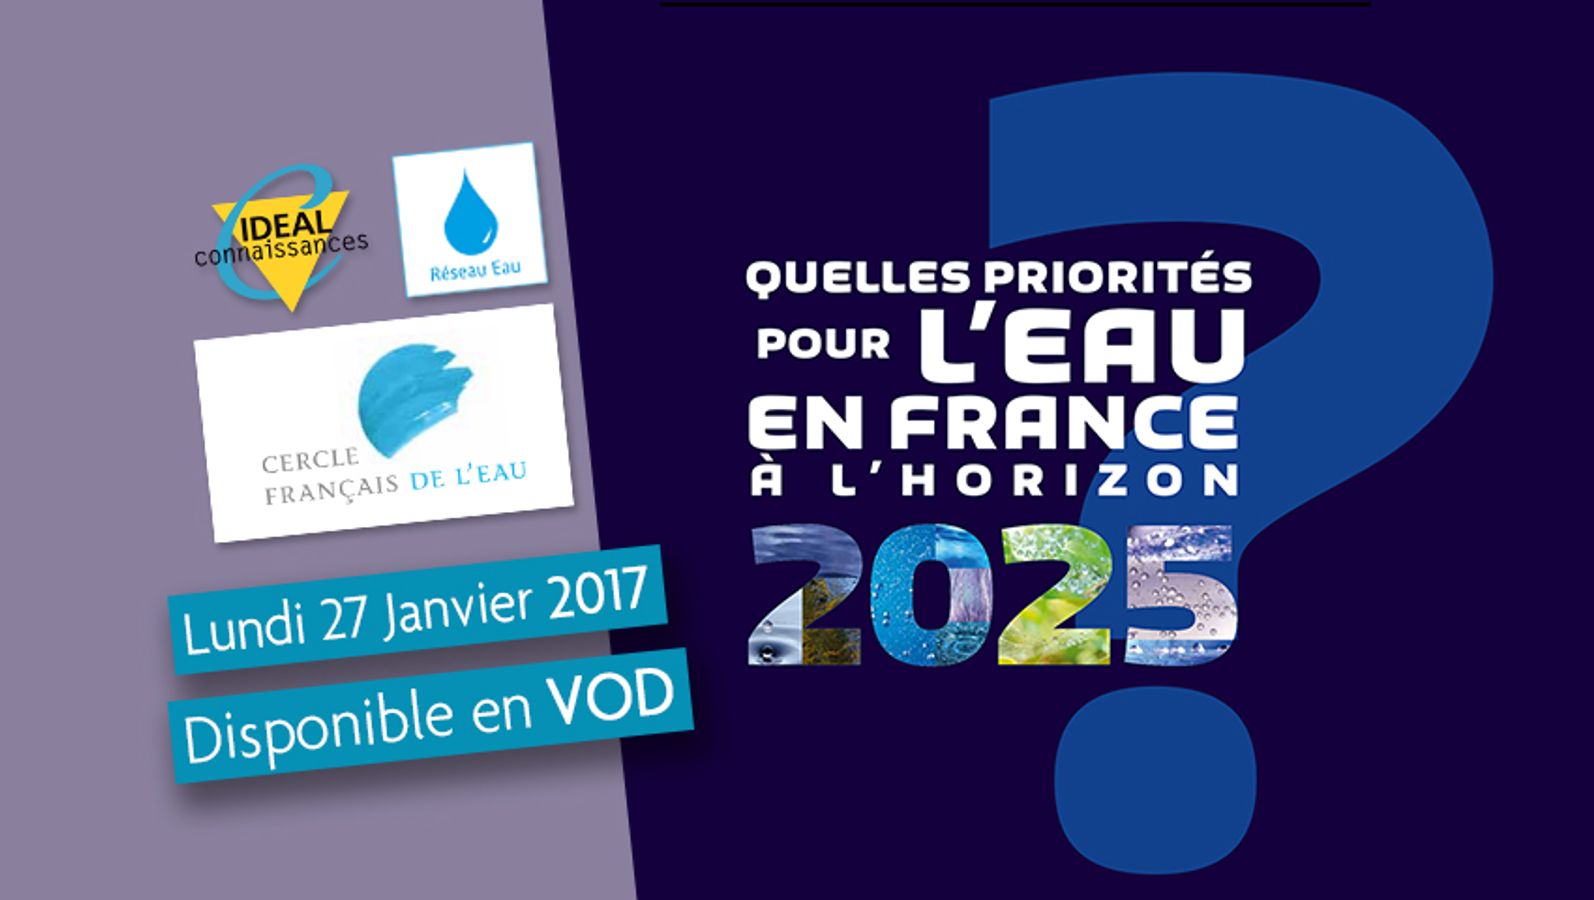 Quelles priorités pour l'eau en France à l'horizon 2025 ?